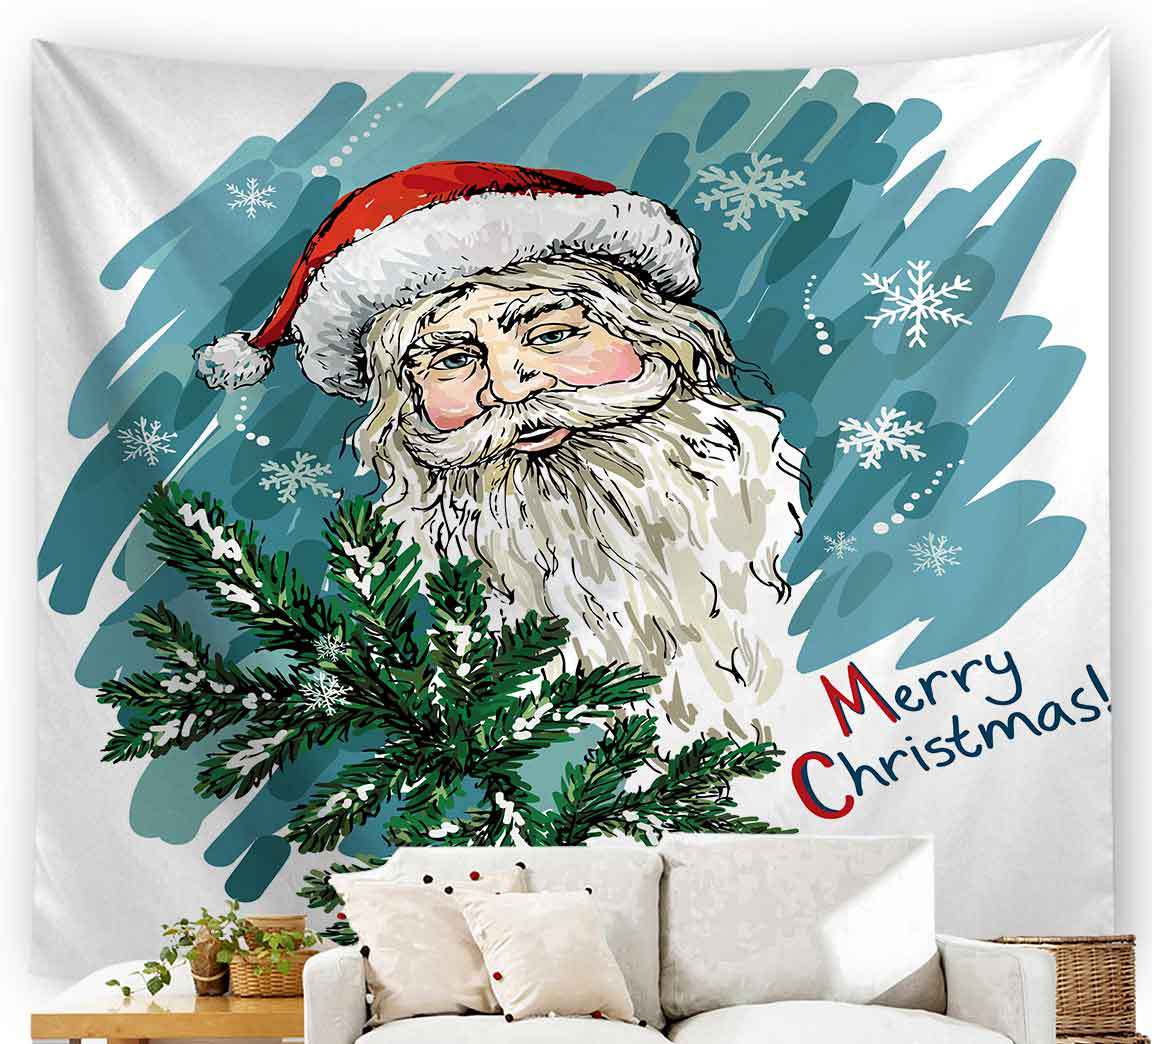 热销外贸欧美圣诞新款印花挂毯创意居家布墙毯画涤纶背景挂布壁毯